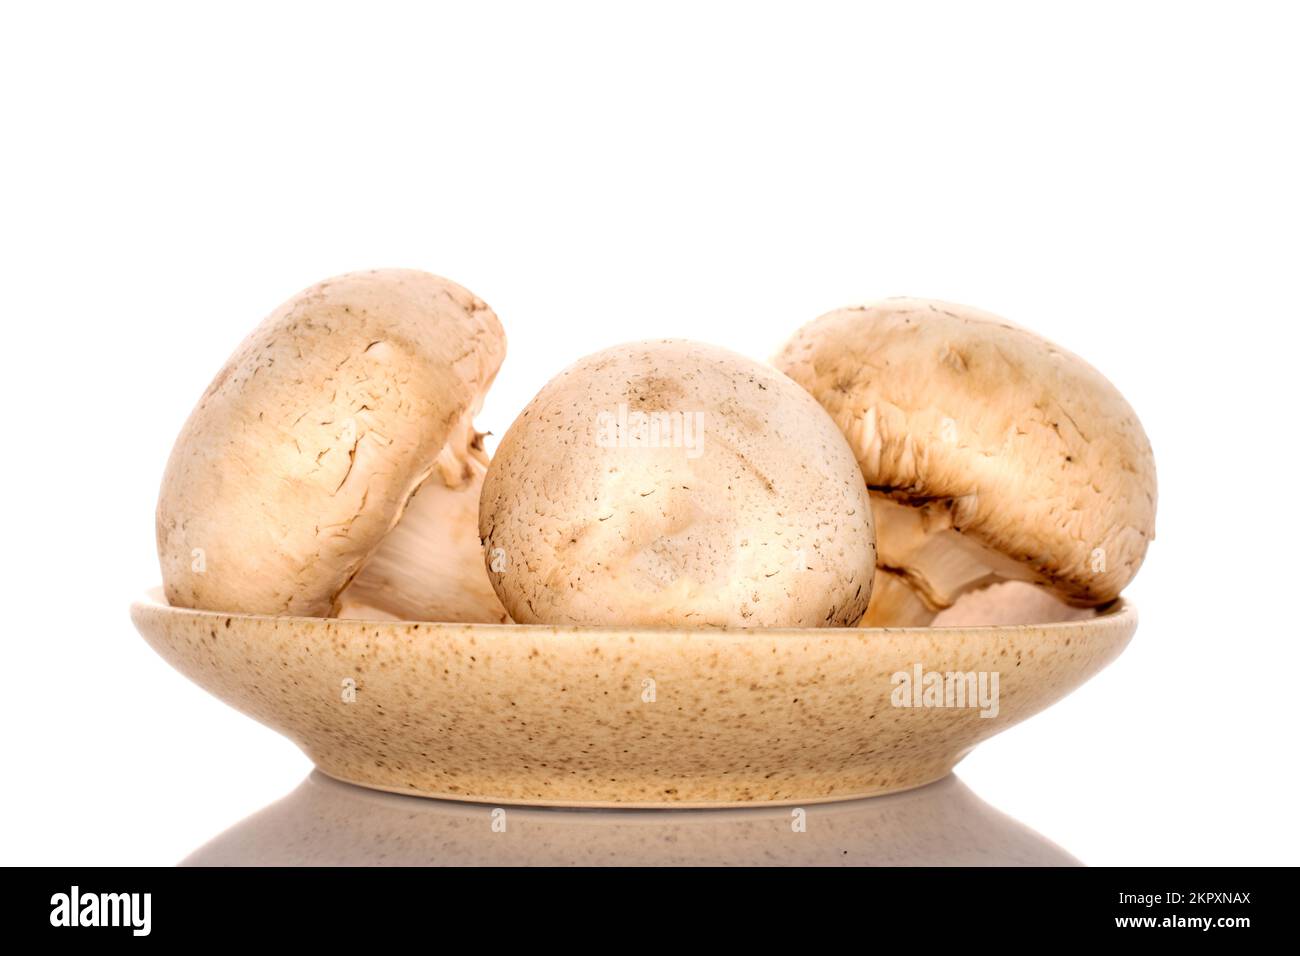 Tre funghi champignon freschi e biologici interi su un piatto di ceramica, primo piano, su fondo bianco. Foto Stock